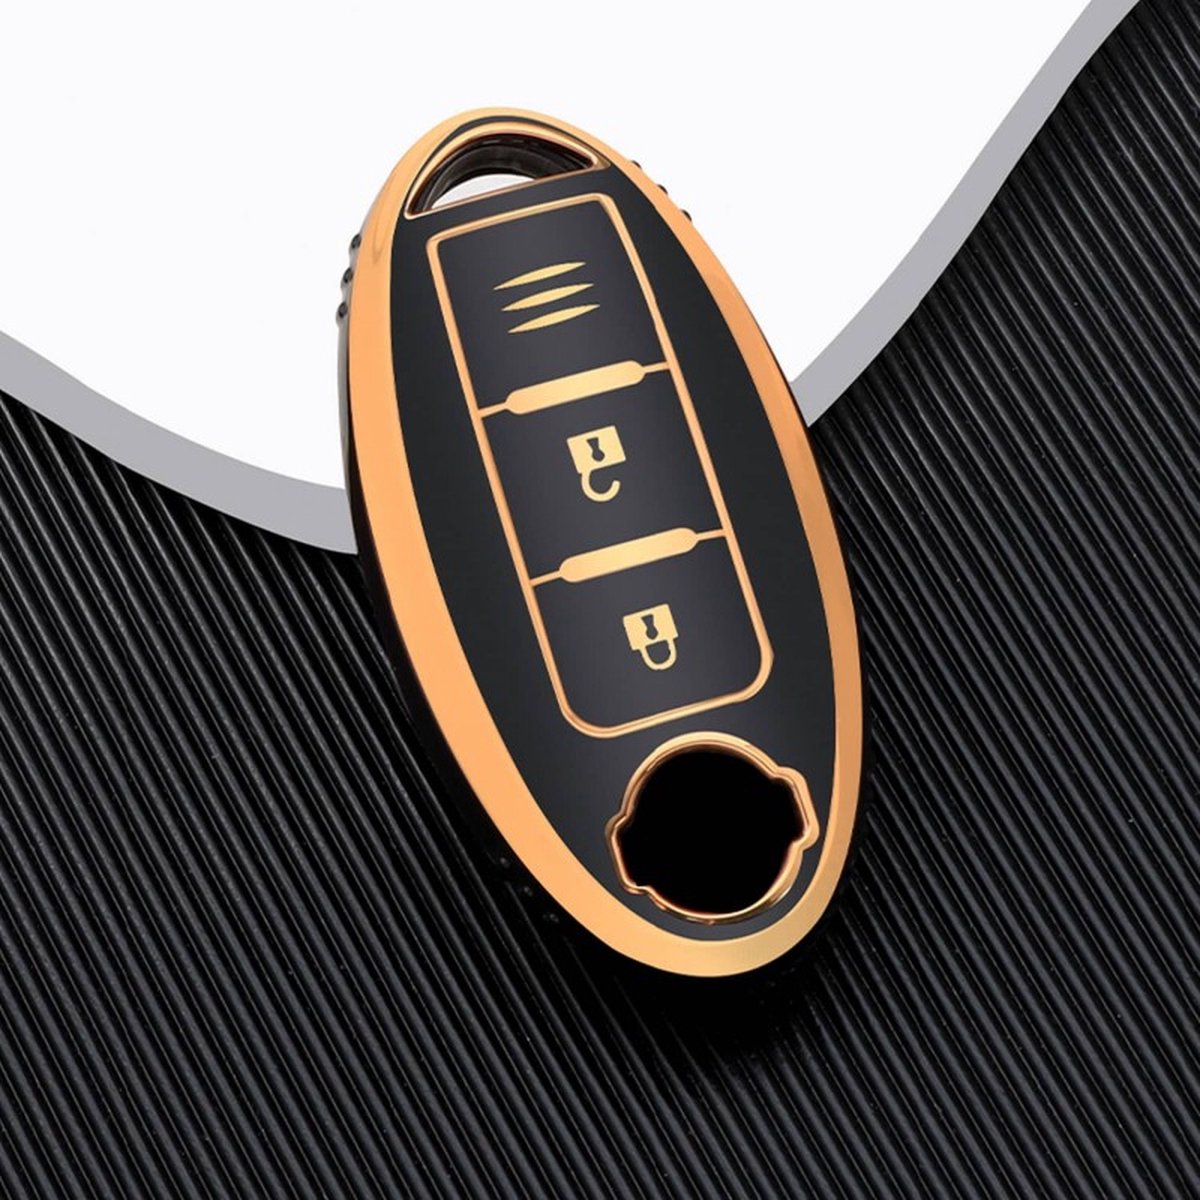 Autosleutel hoesje - TPU Sleutelhoesje - Sleutelcover - Autosleutelhoes - Geschikt voor Nissan -zw-goud - A3C - Auto Sleutel Accessoires gadgets - Kado Cadeau man - vrouw